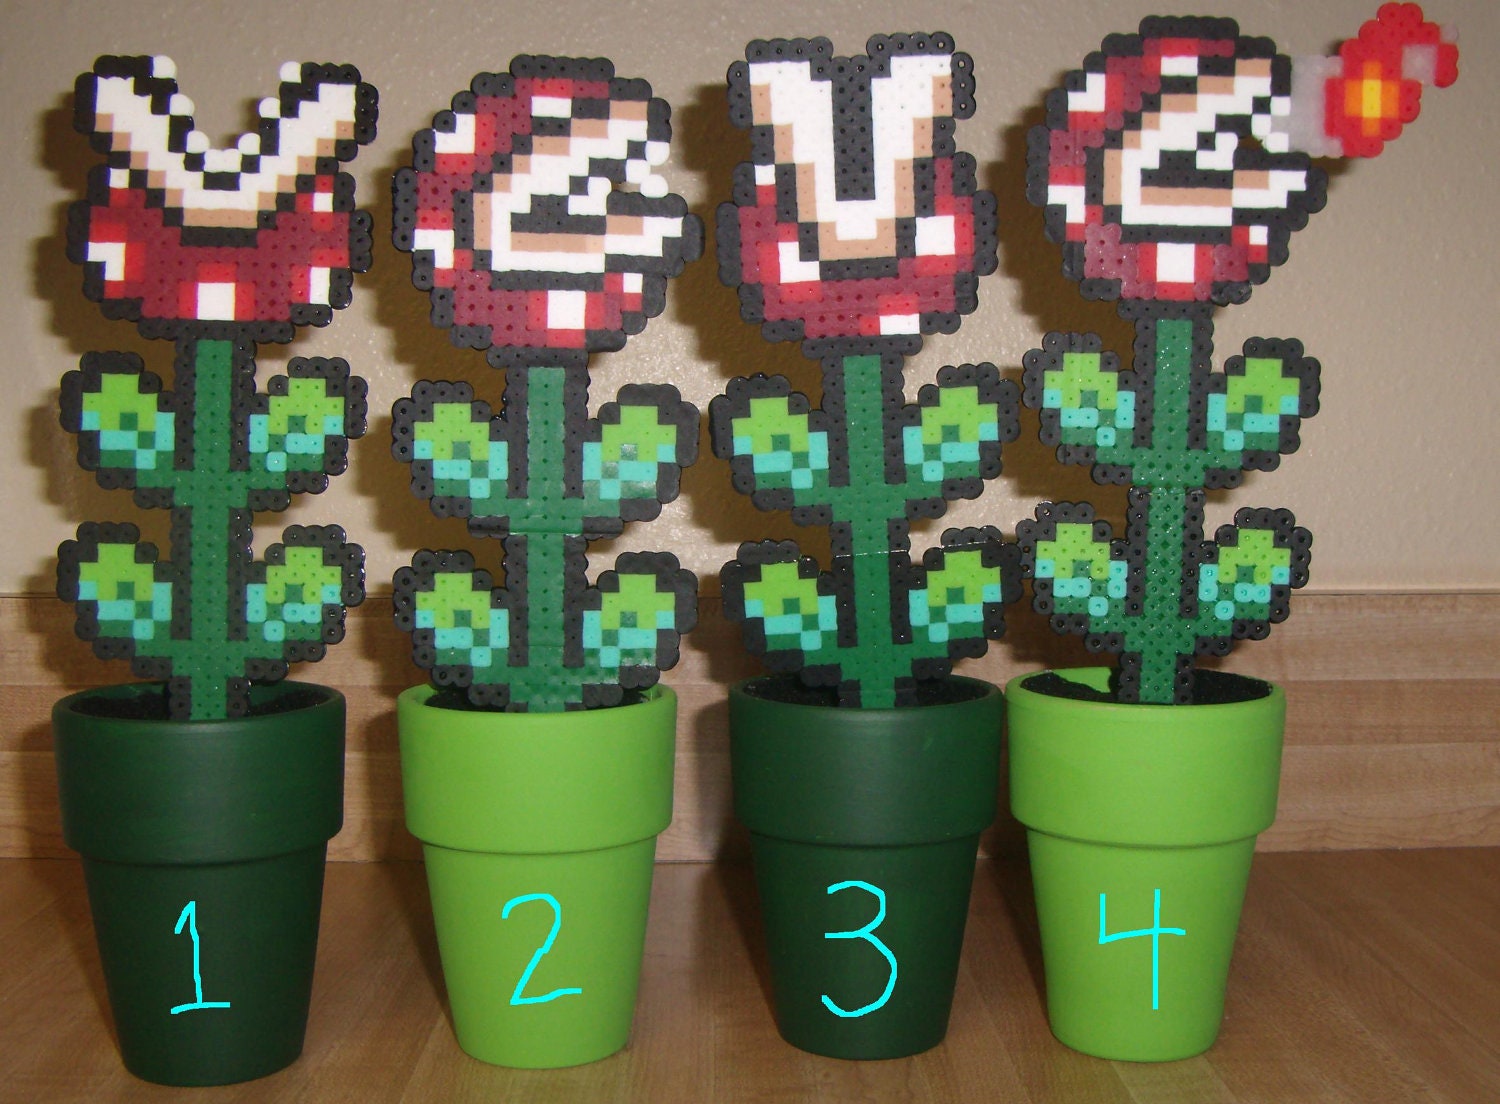 8 bit Super Mario Bros Piranha Plants in Pipes set
 8 Bit Mario Pipe